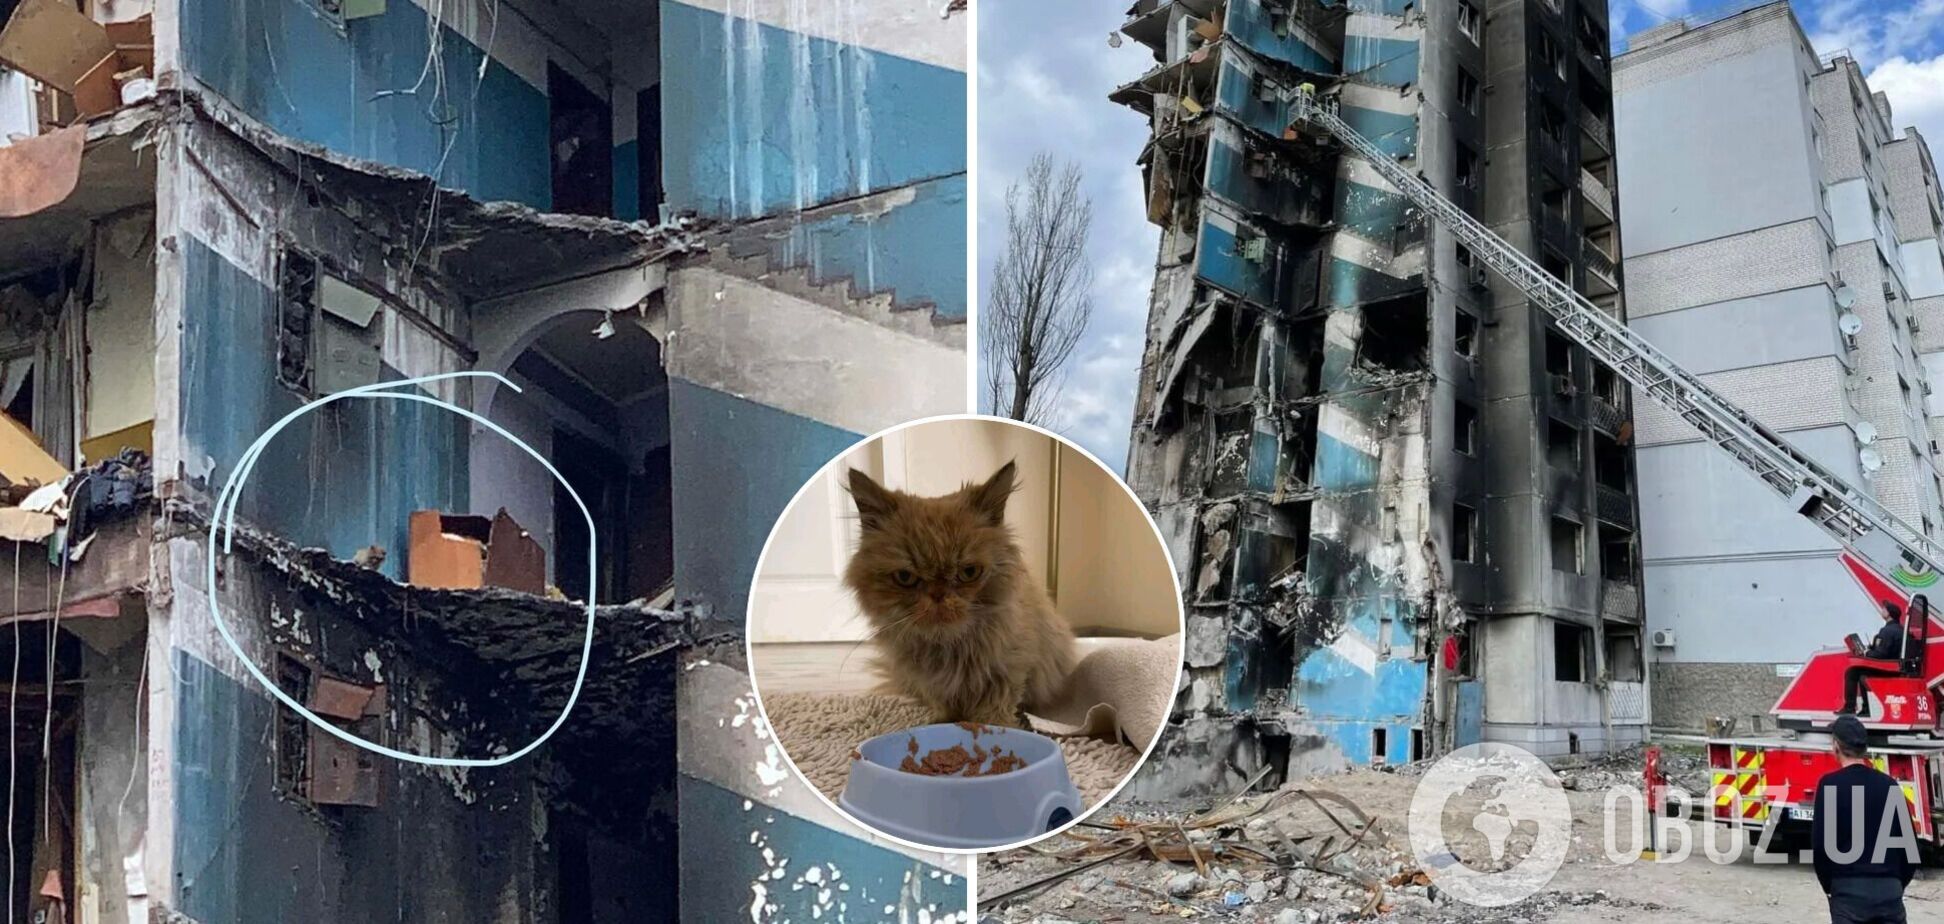 Кошка чудом выжила в разрушенном доме